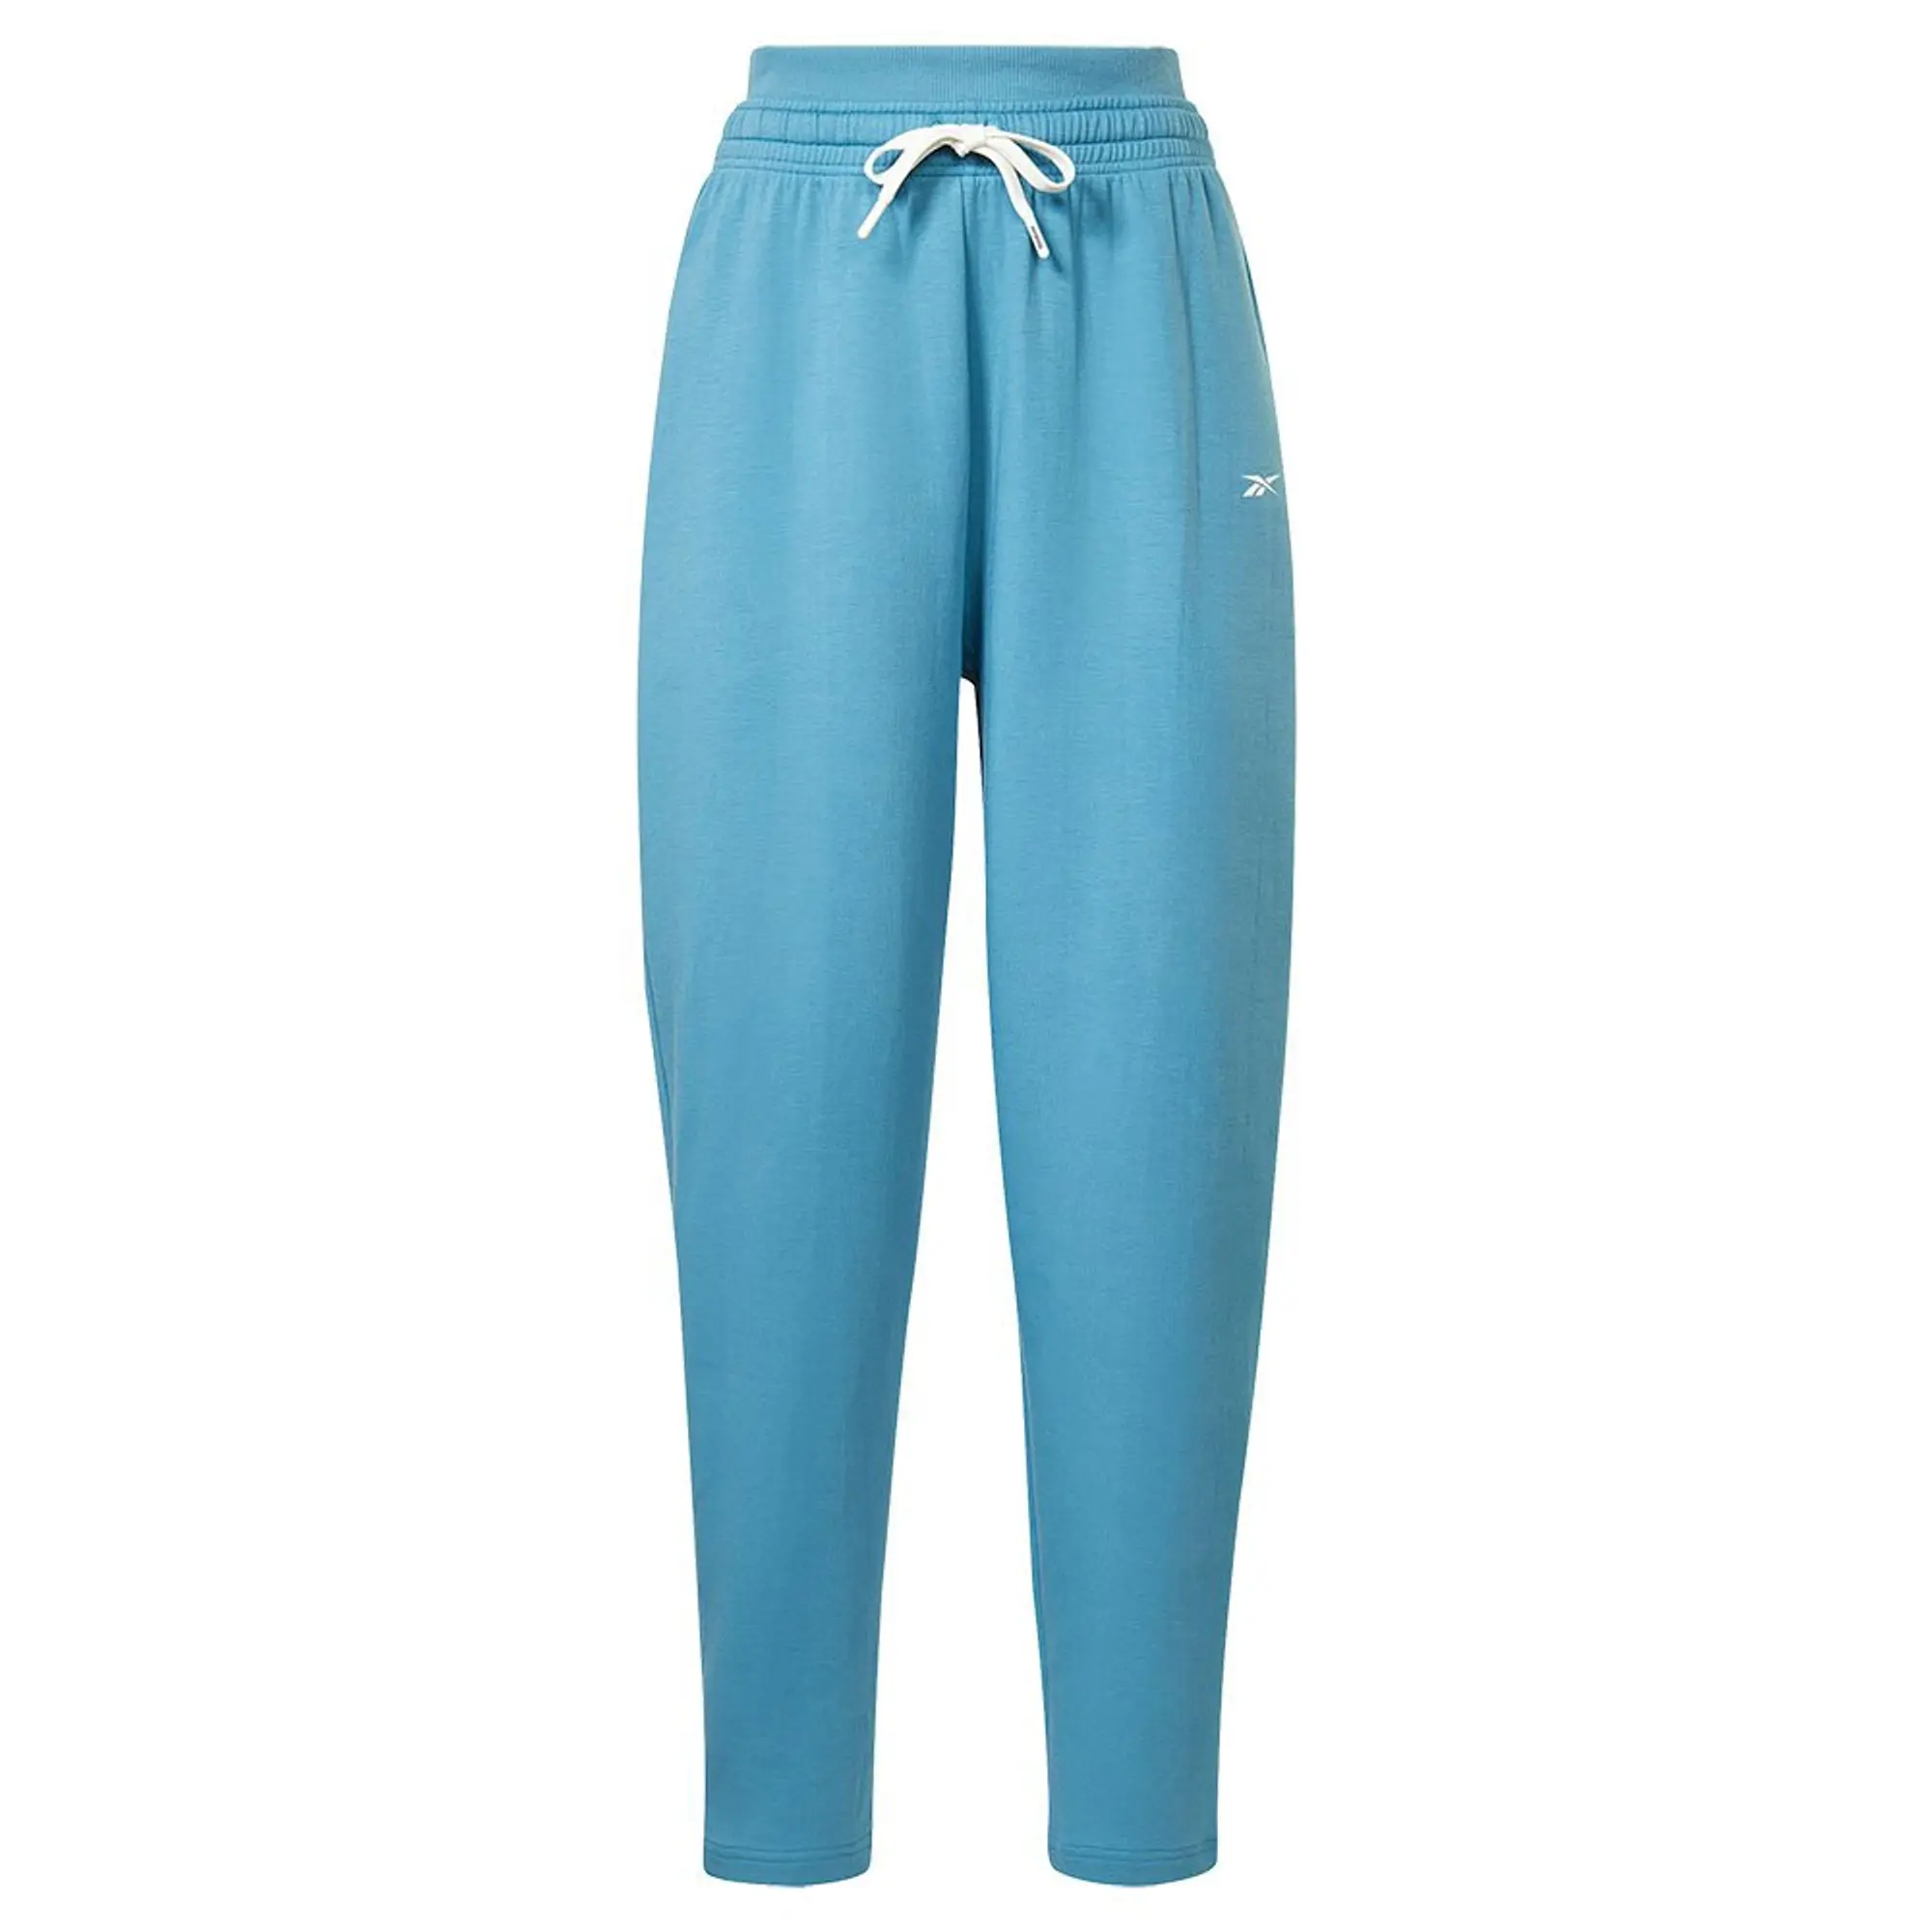 DreamBlend Cotton Knit Joggers Pants - Blue, HT6104